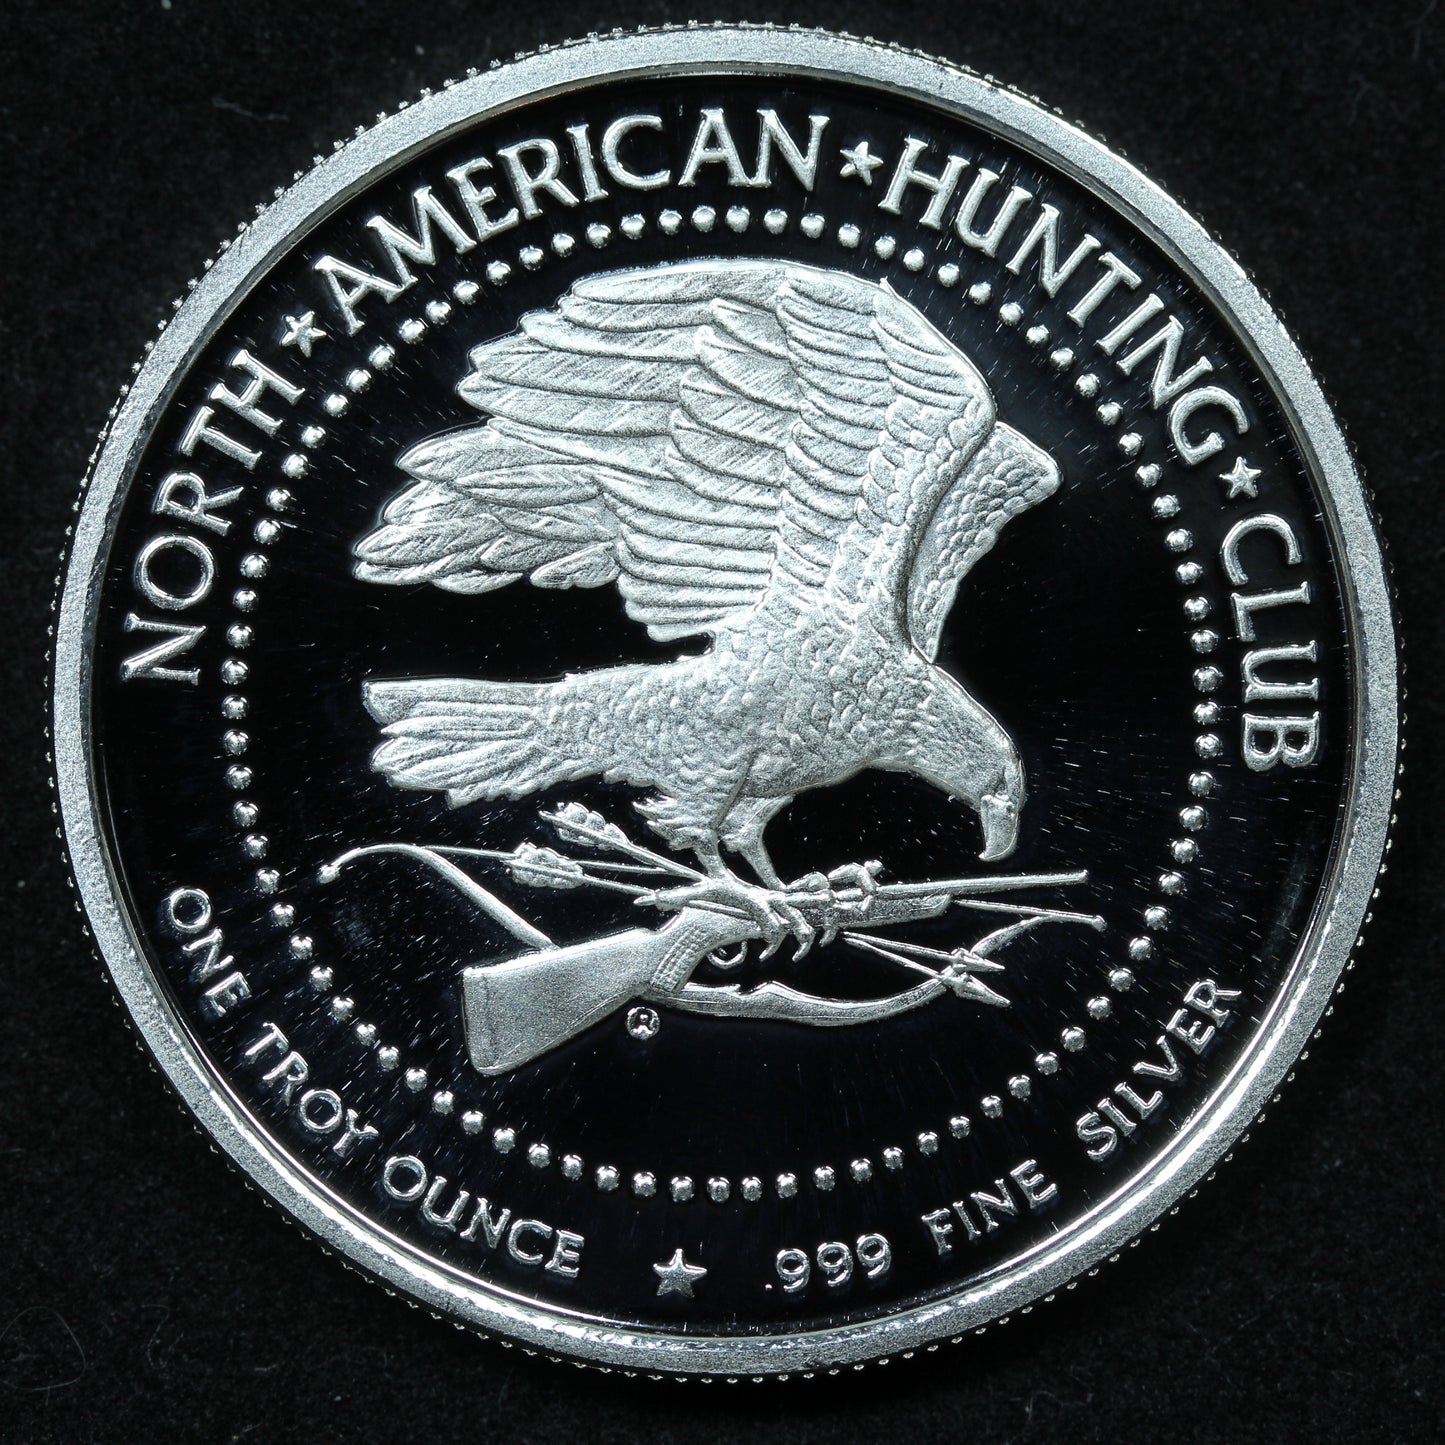 1 oz .999 Fine Silver - North American Hunting Club - Muzzleloader World Record w/ Capsule